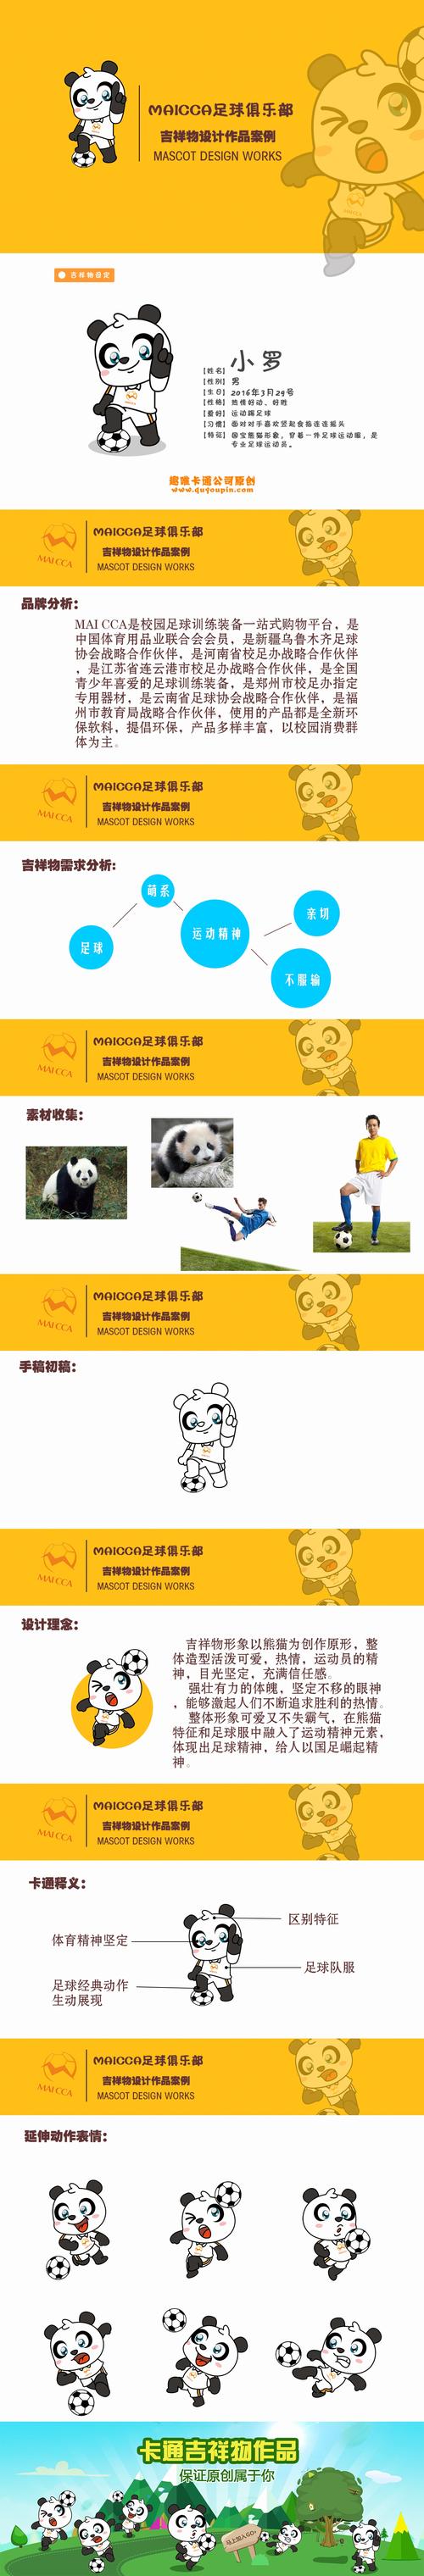 熊猫直播足球解说